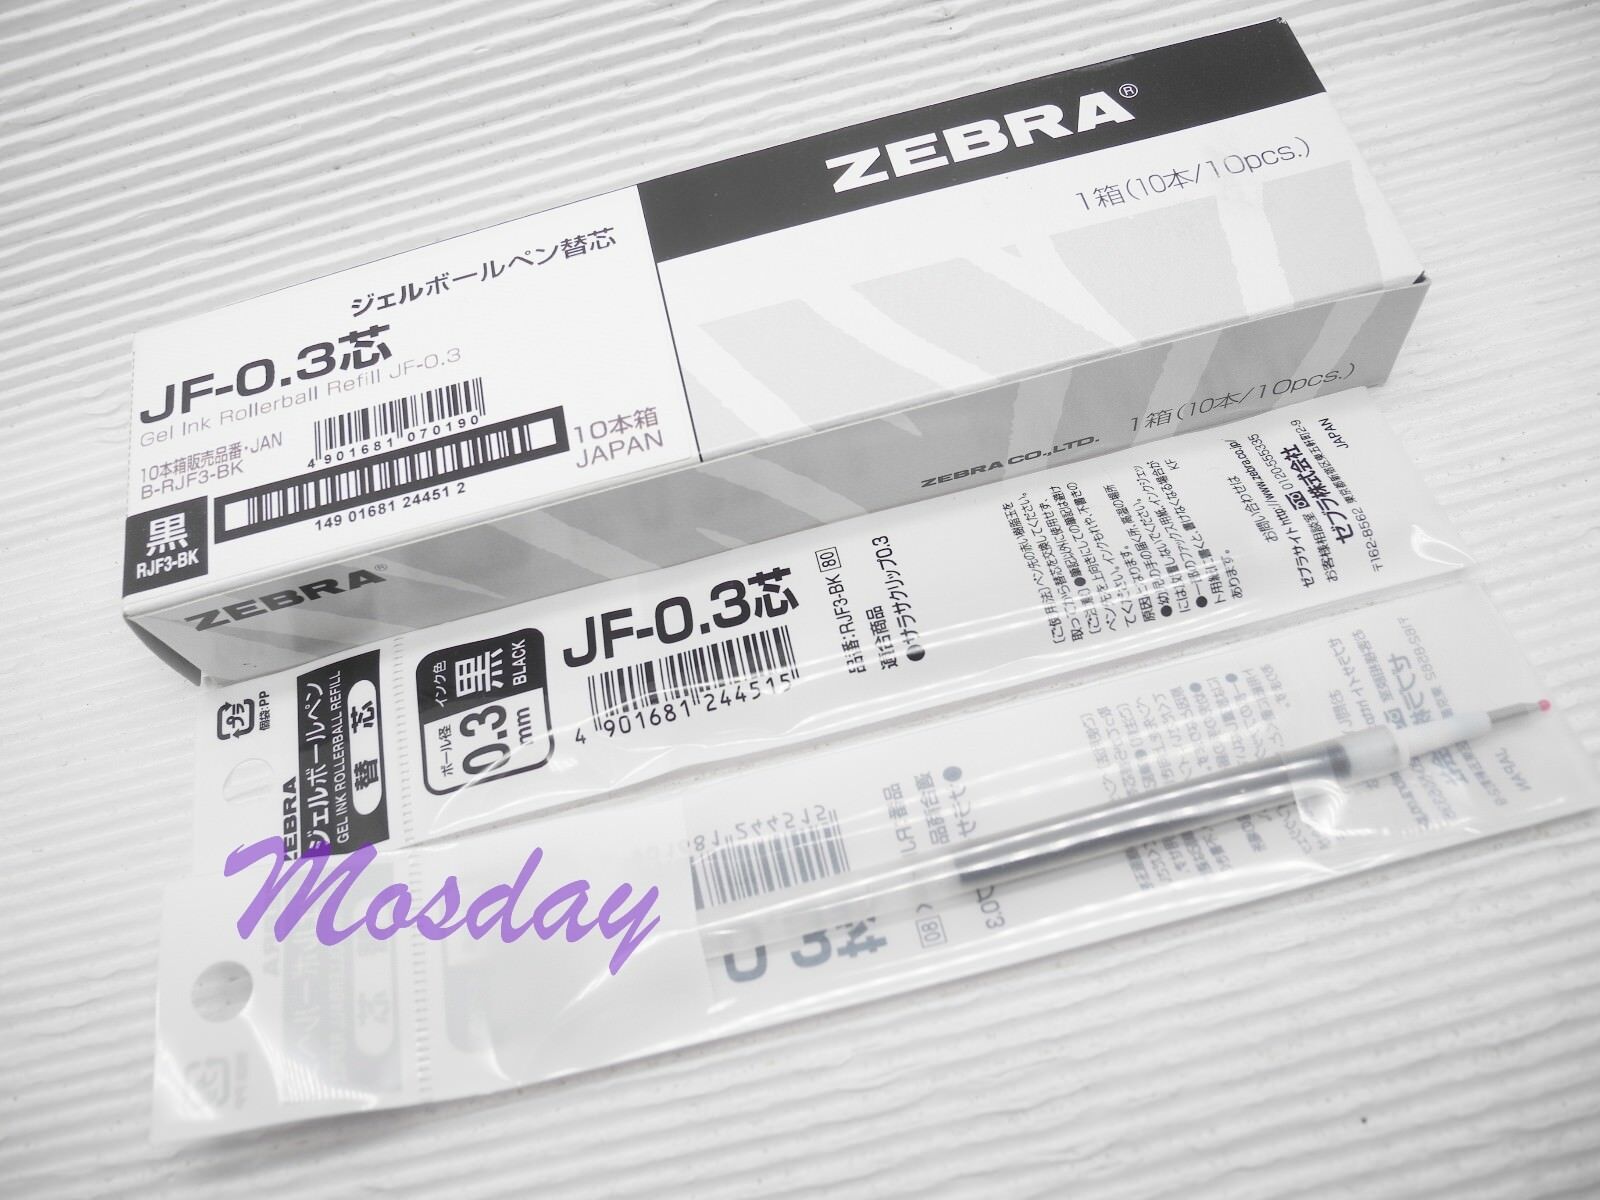 10 x Zebra SARASA Retractable RollerBall Pen Refills 0.3mm Micro Fine, BLACK